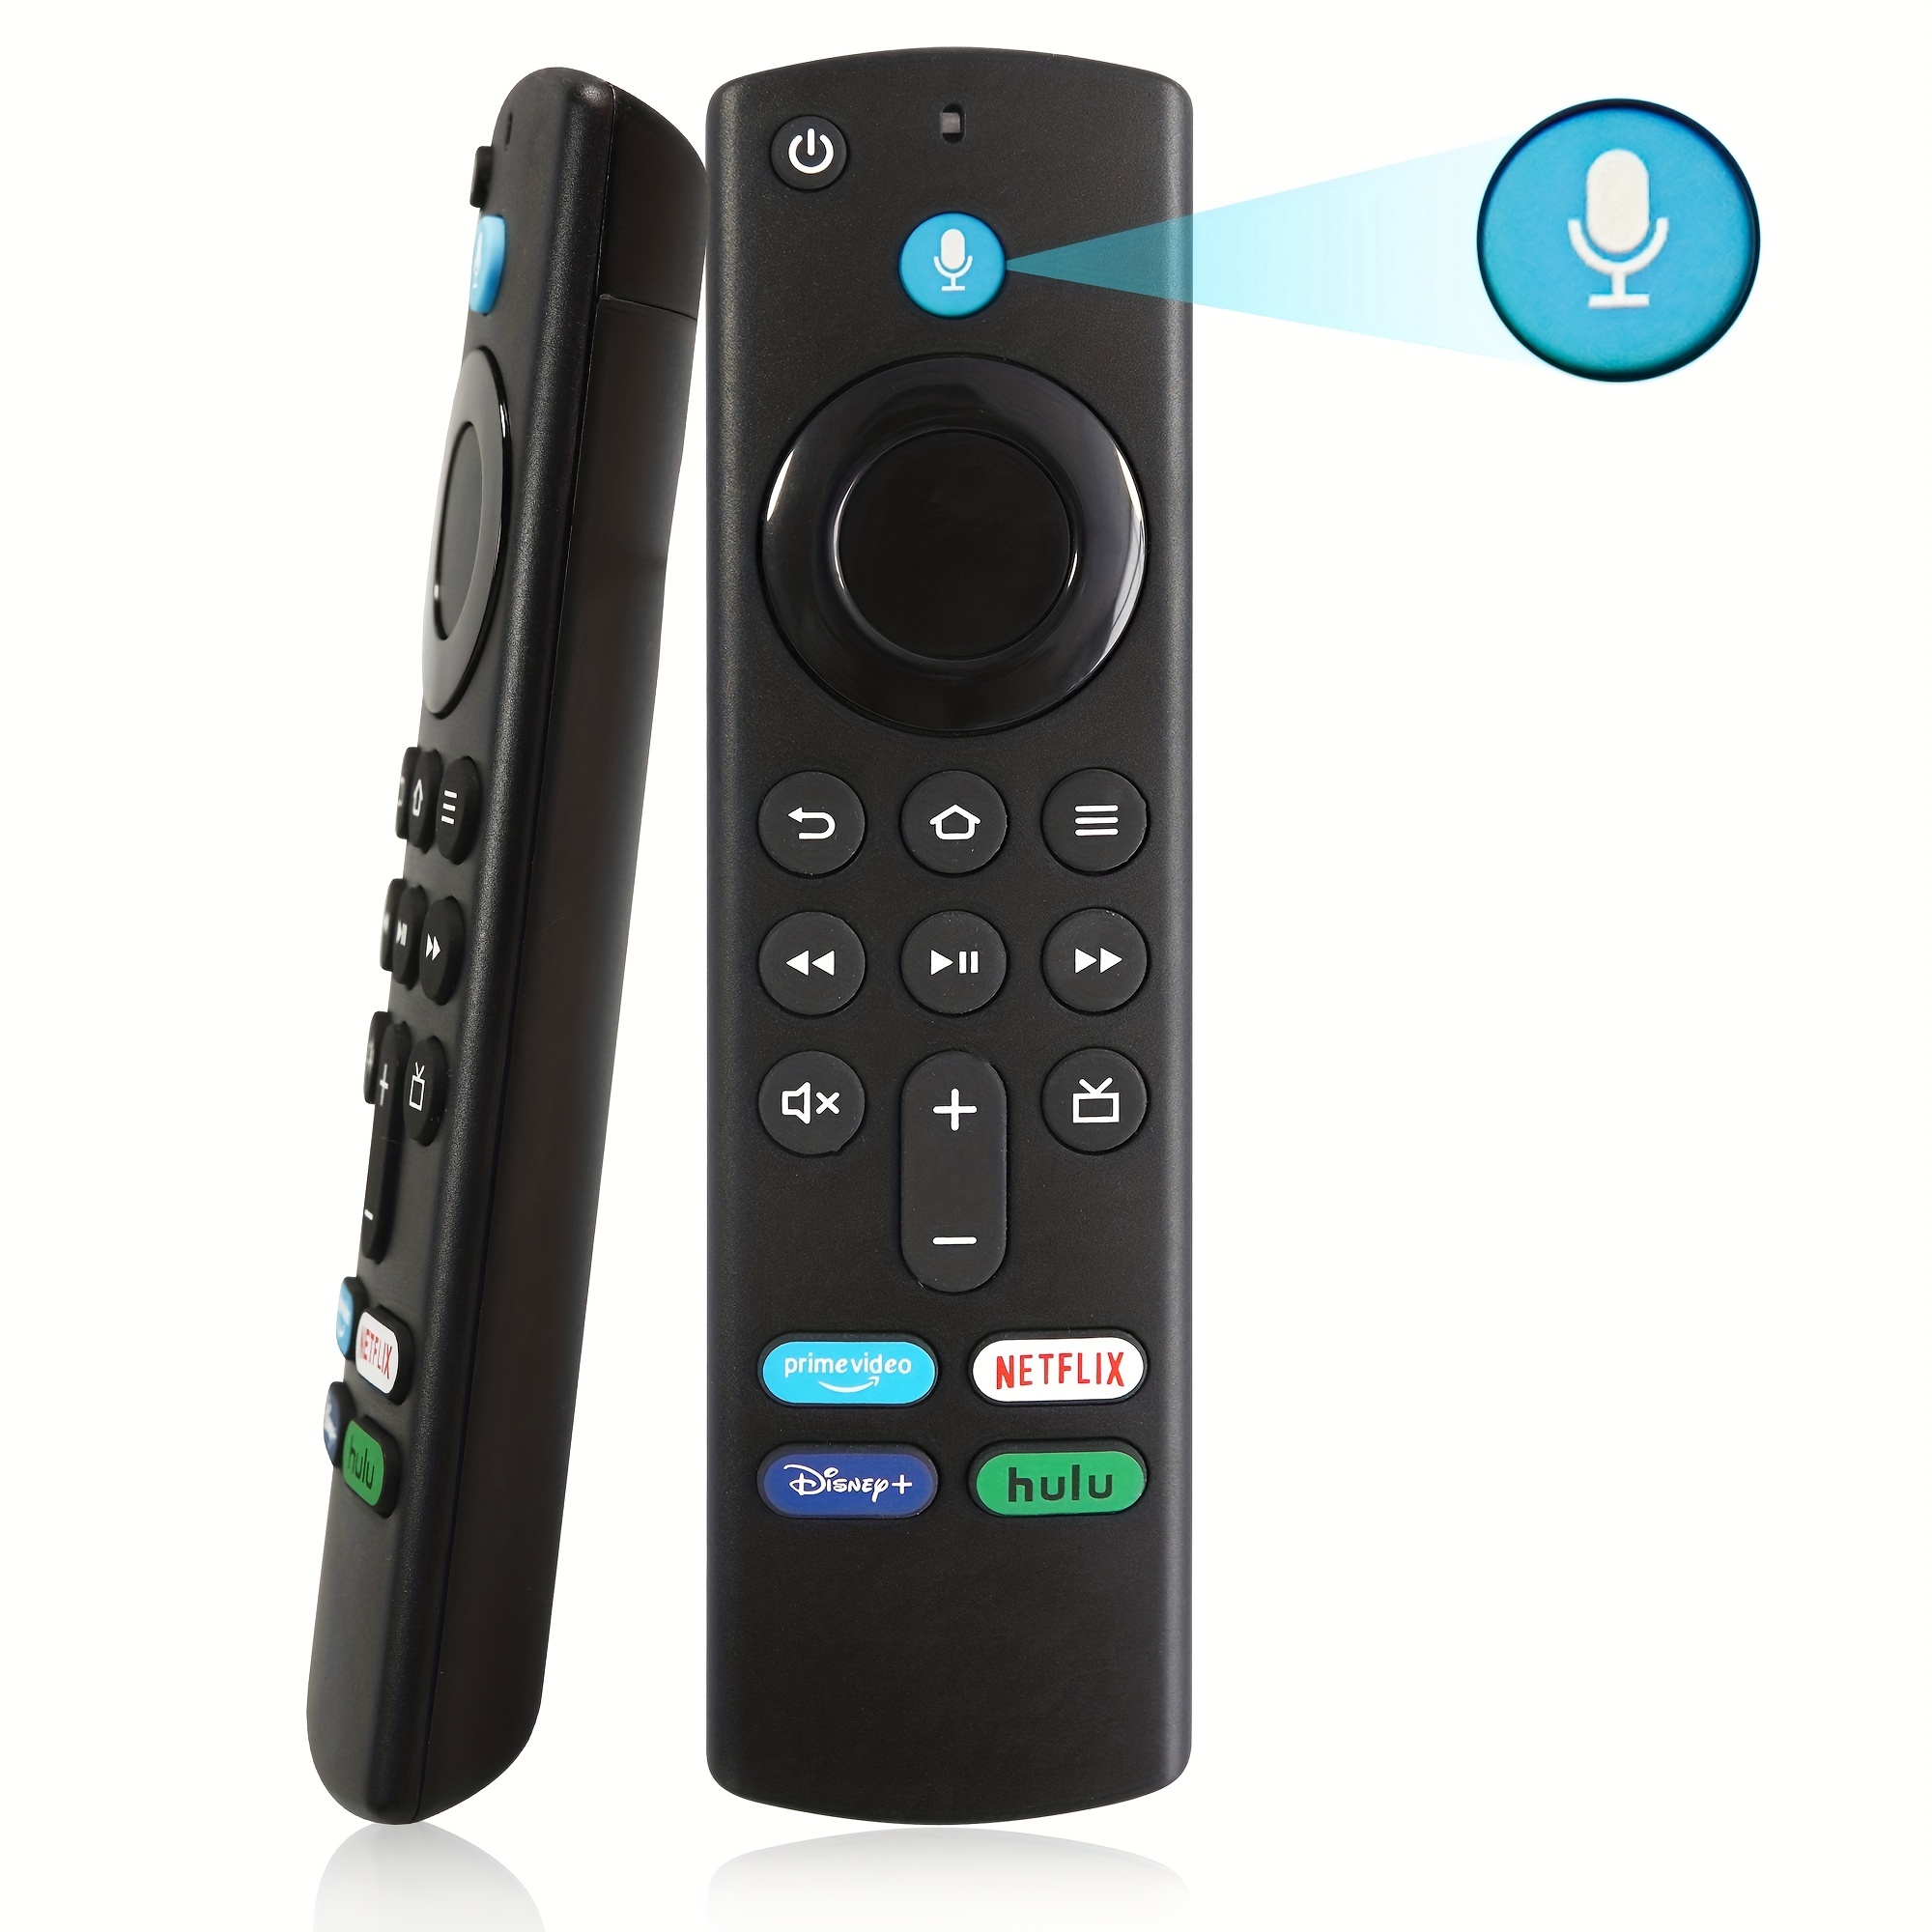 Control remoto universal para todos los televisores inteligentes TCL,  reemplazo del mando a distancia RC802V para todos los televisores TCL TV  Android 4K, no requiere configuración [sin comando de voz]